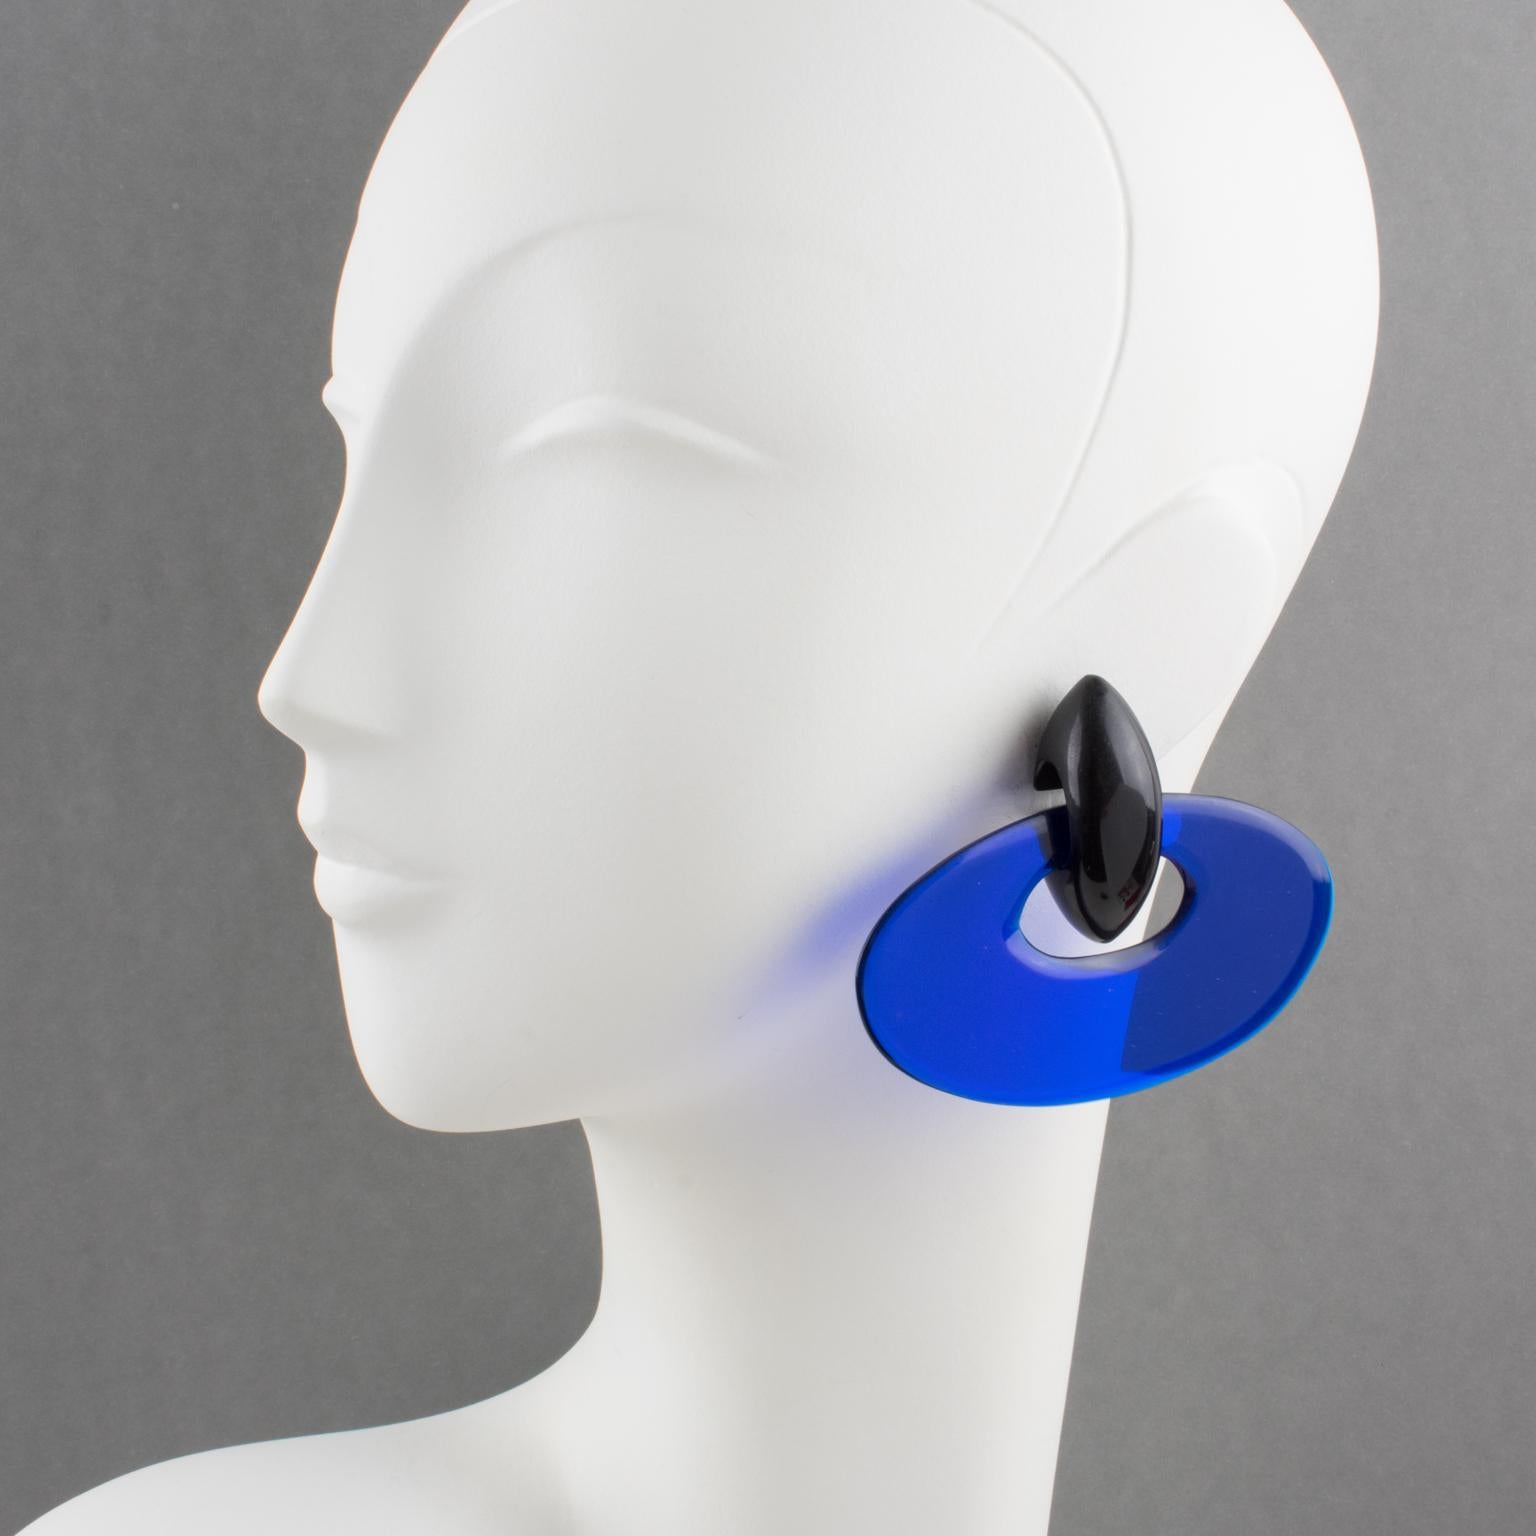 Charmantes boucles d'oreilles à clip surdimensionnées de Gerda Lyngaard pour Monies. Donut elliptique extra-large en résine transparente bleu cobalt contrastant avec l'élément de chute en bois d'ébène. Marqué 